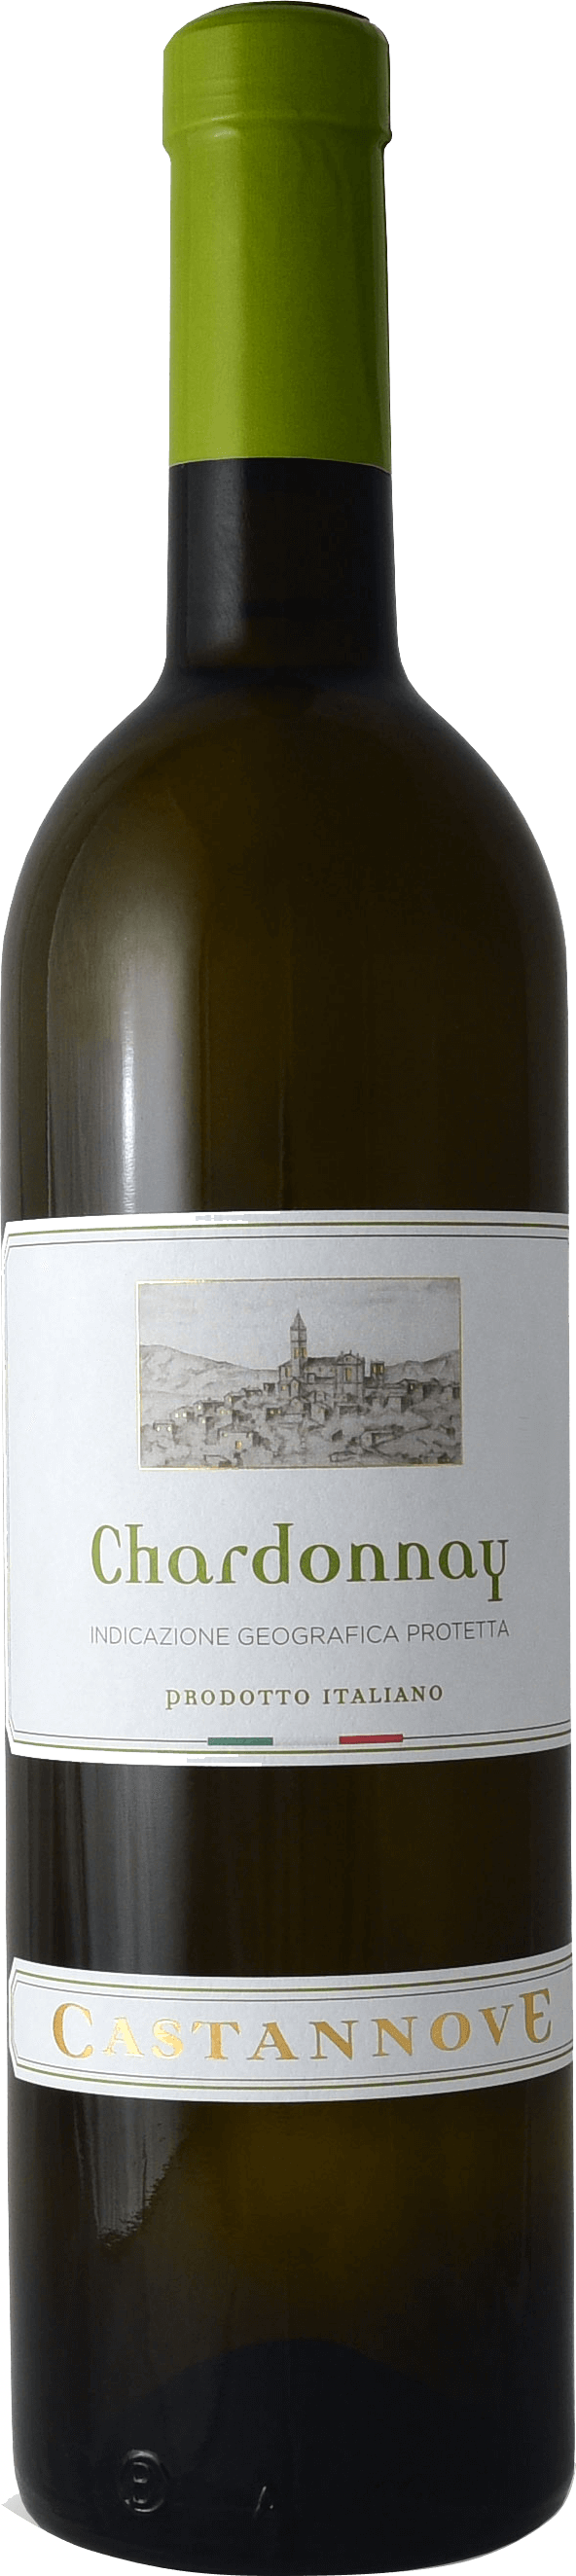 Chardonnay Terre di Chieti IGP Castannove